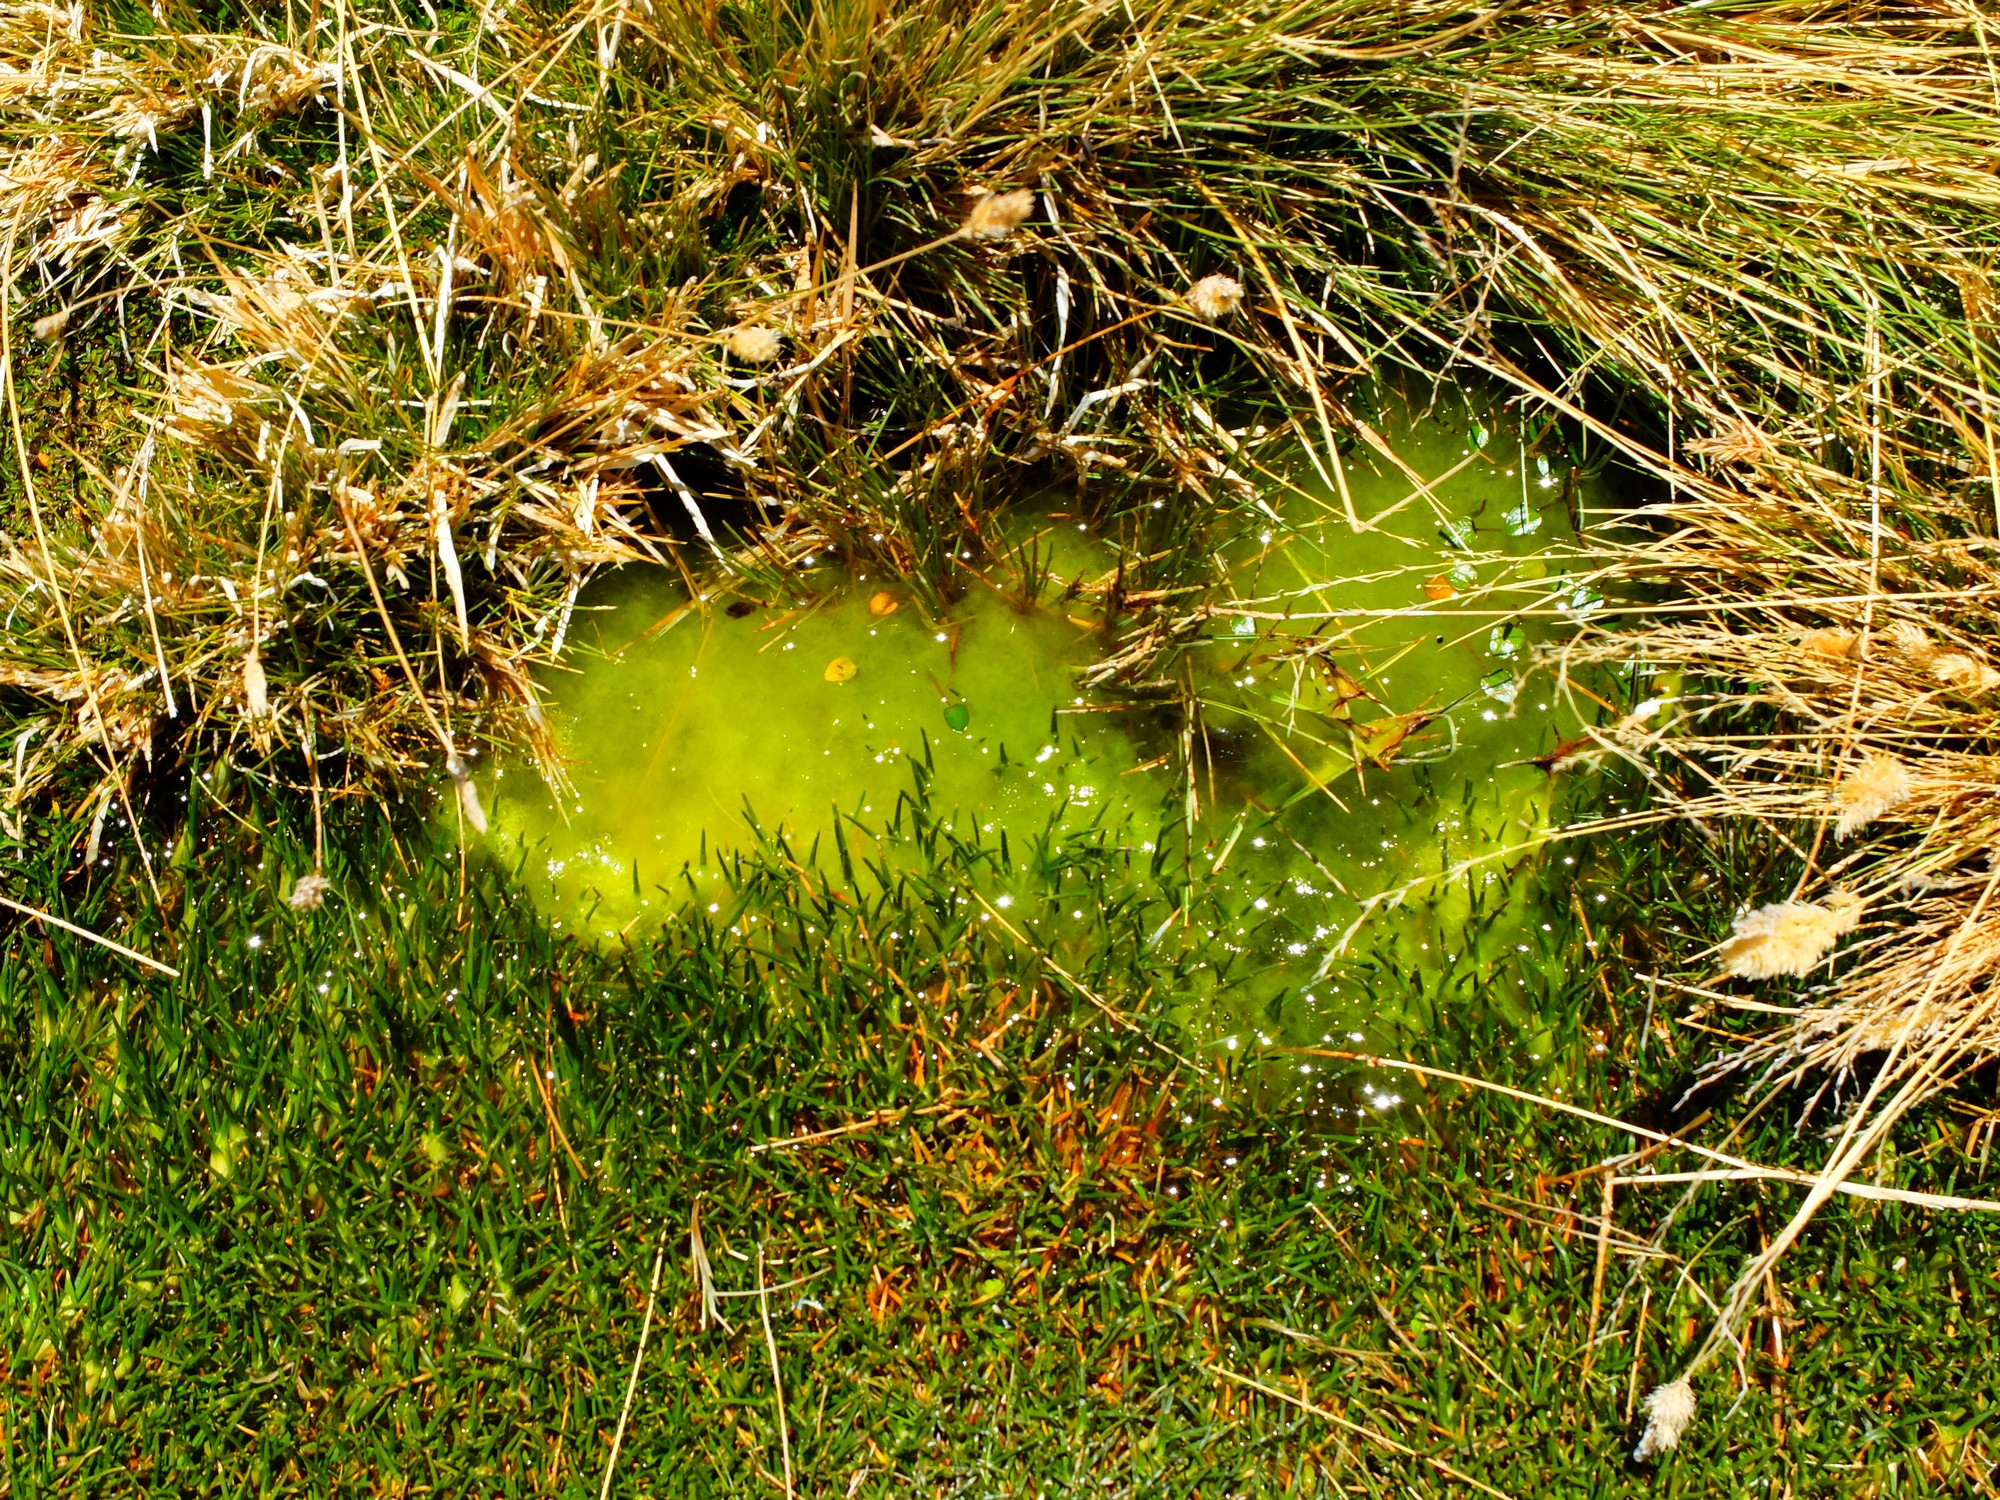 A brilliant green bog